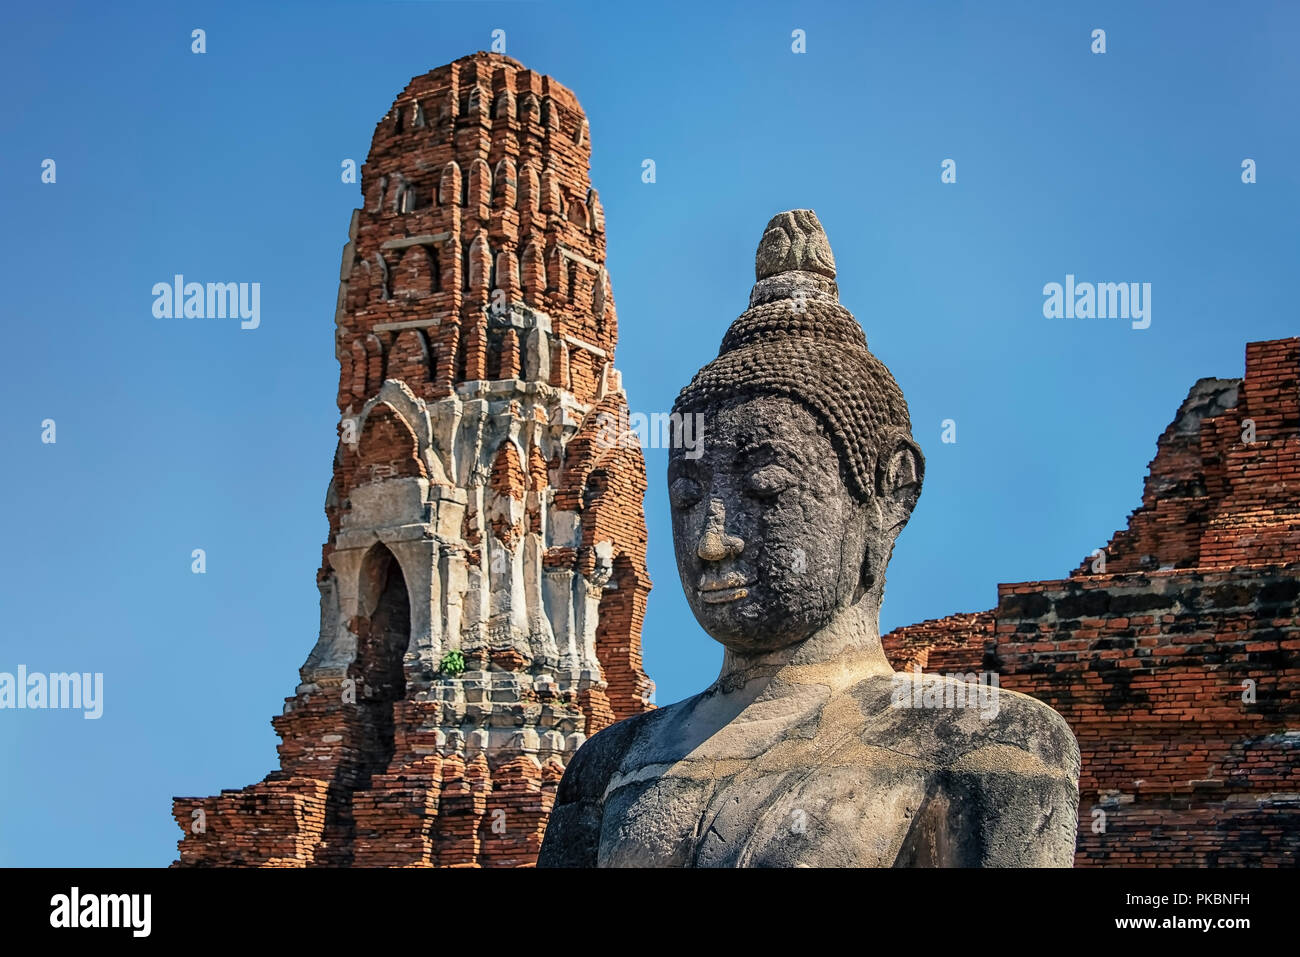 Buddha statue in Wat Mahathat, Ayutthaya, Thailand Stock Photo